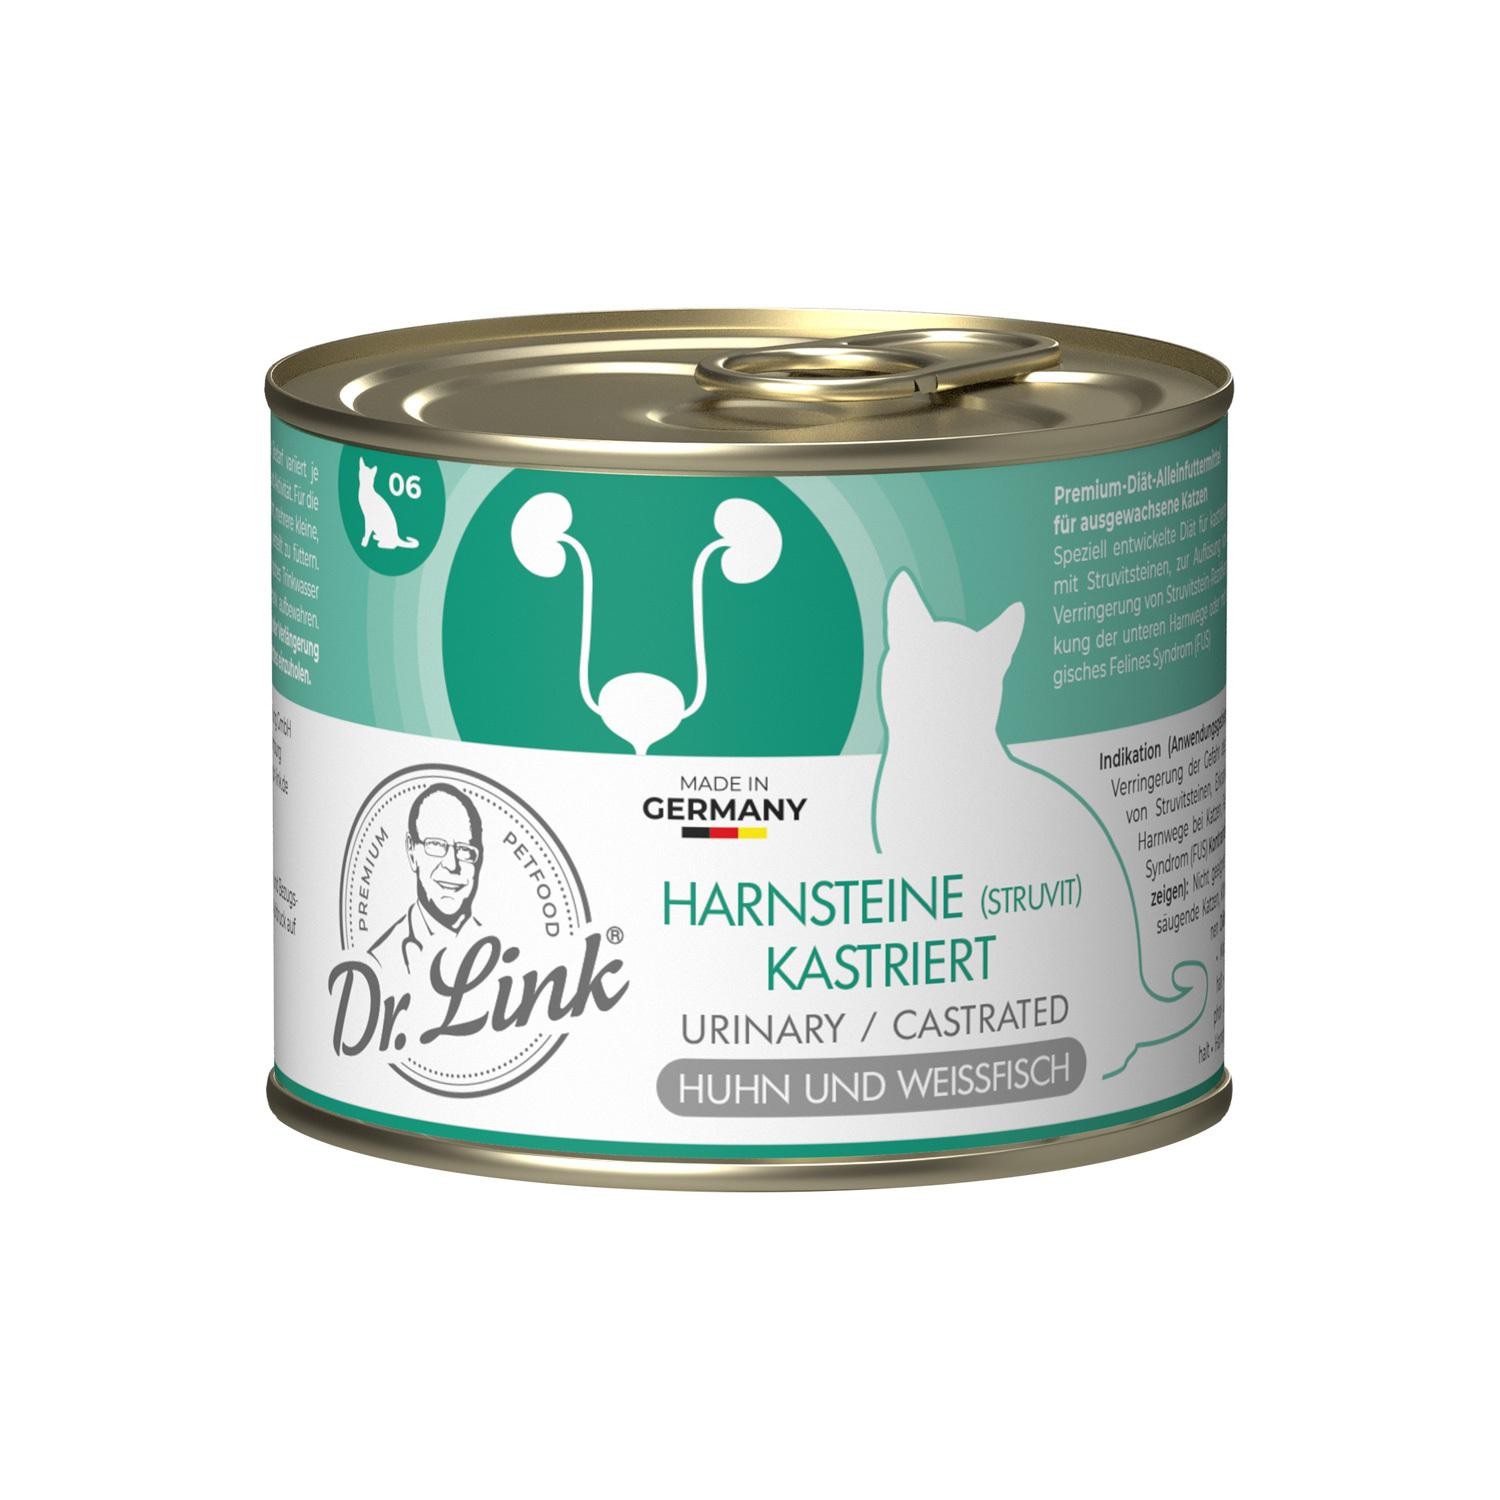 Dr. Link® SPEZIAL-DIÄT 6x200g Harnsteine (Struvit) Kastriert | Urinary / Castrated Huhn und Weißfisch